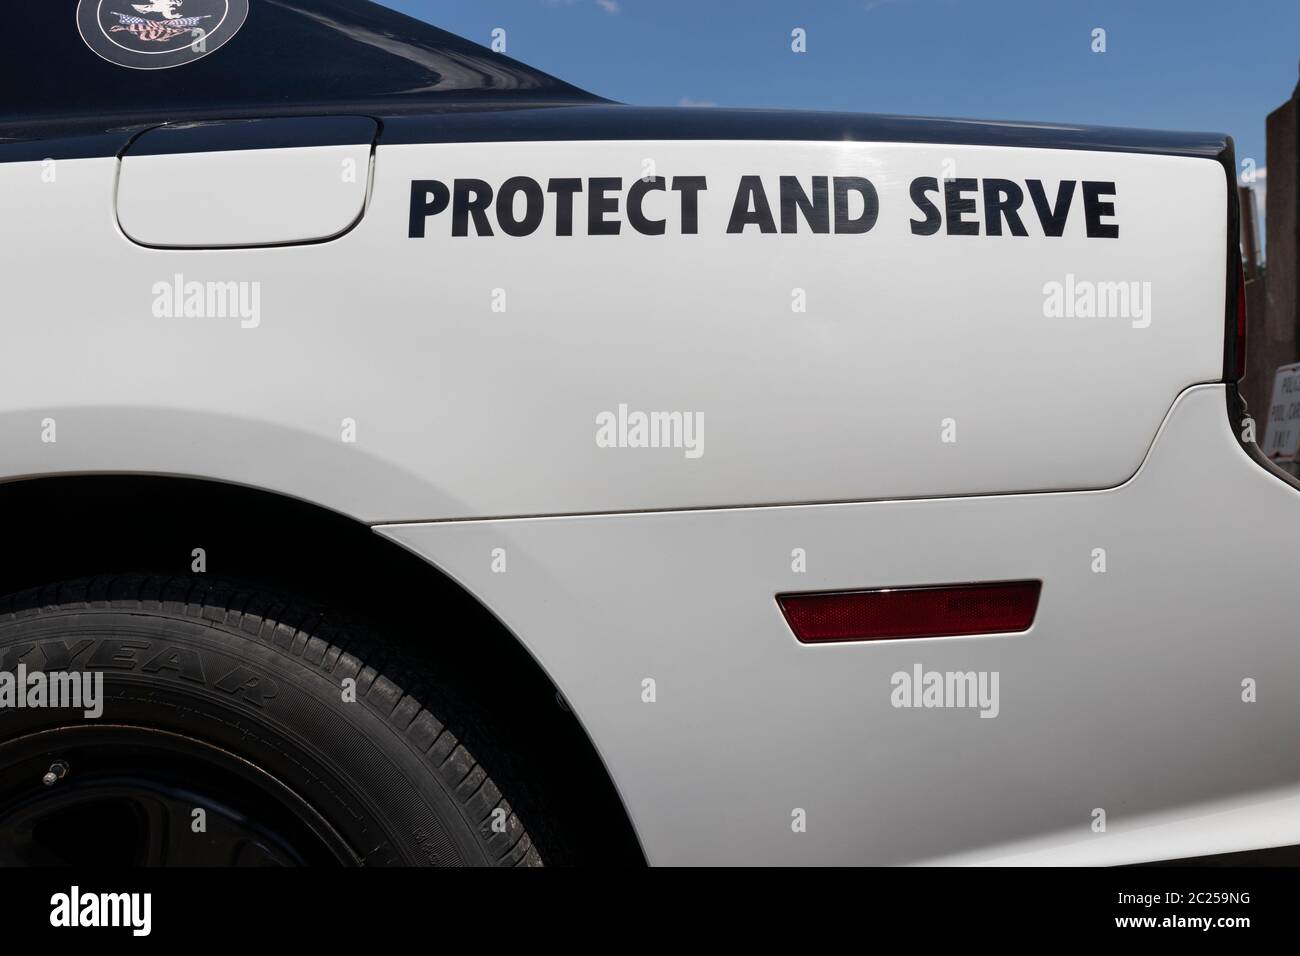 Logansport - circa Juni 2020: Polizeiautos mit den Worten Protect and serve. Die Aktionen der Polizei haben zu Aufrufen geführt, die Polizeiabteilungen zu entfinanzieren. Stockfoto